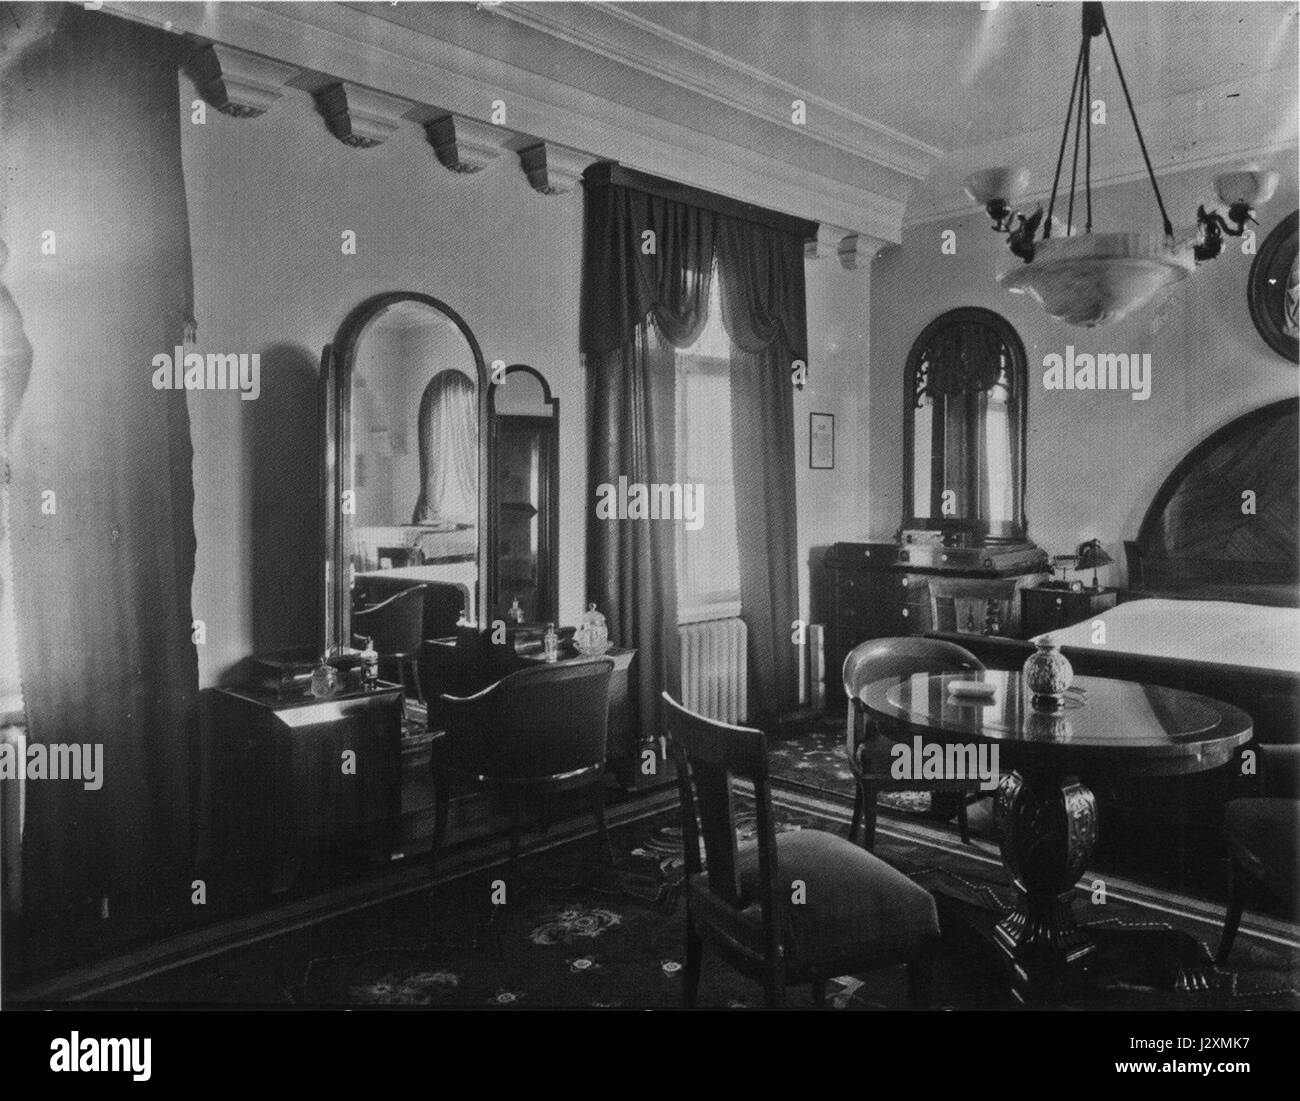 AHW Schlafzimmer Stilelementen Biedermeier um 1925 Stock Photo